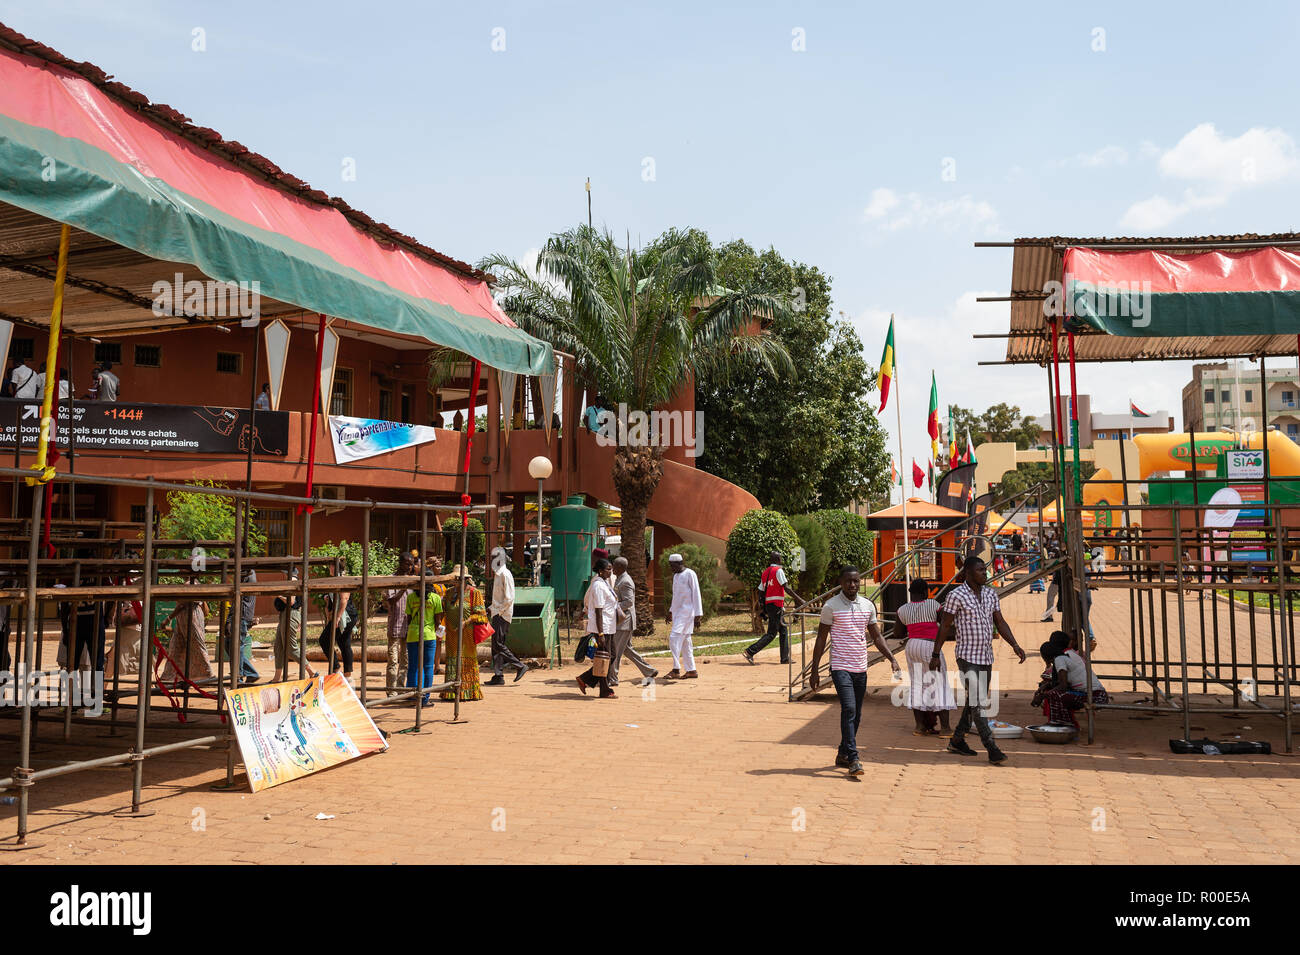 SIAO Ouagadougou, International Arts and Handicrafts Trade Show, regional Fair, 26 Oct. - 04 Nov. 2018, Ougadoungou, Burkina Faso, Africa Stock Photo